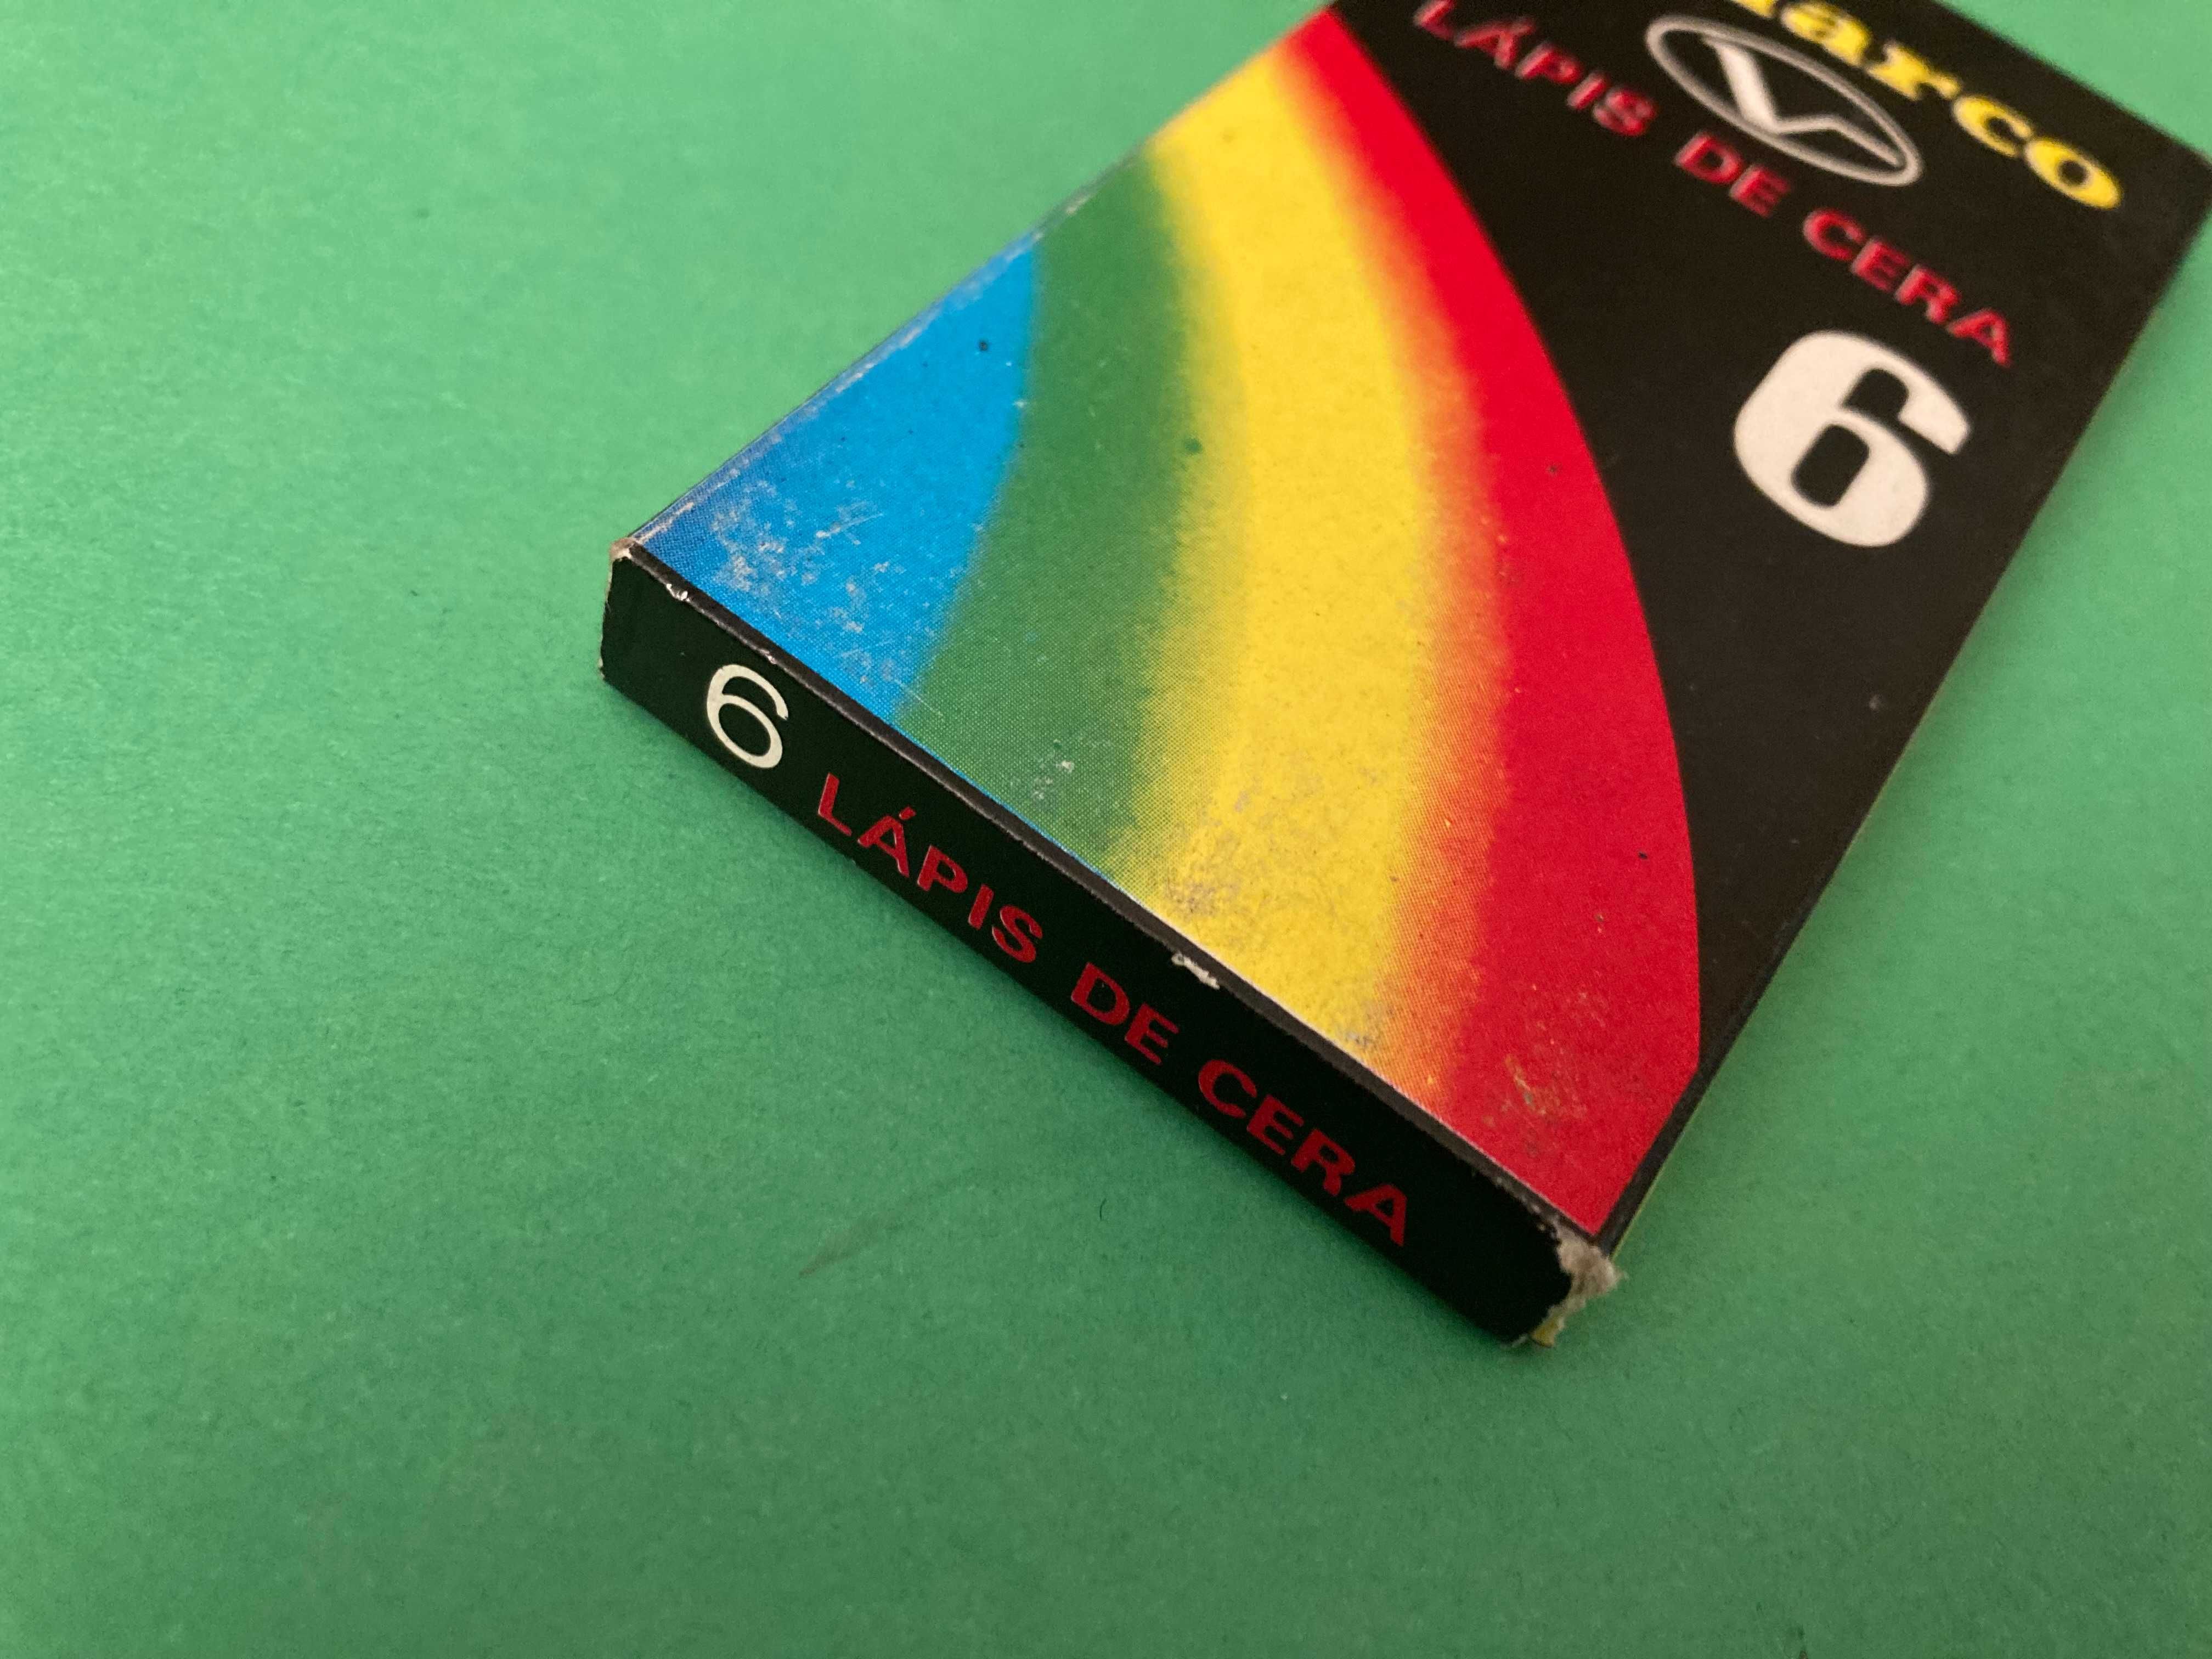 Caixa de 6 Lápis de Cera da marca Viarco Antigos